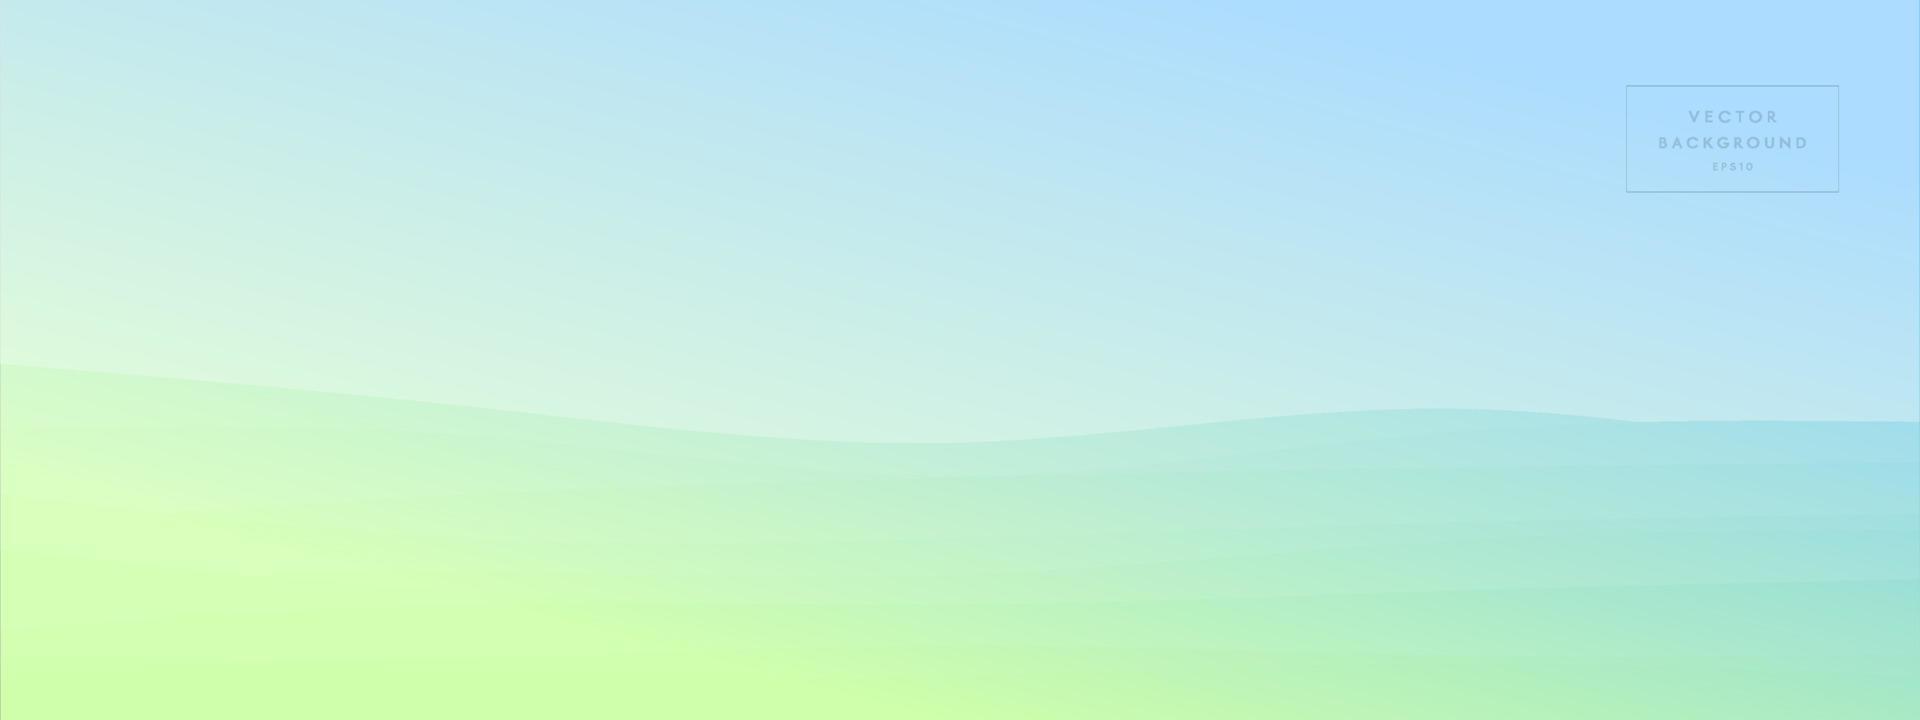 abstracte golf vloeiende lijn minimalistische moderne achtergrond met kleurovergang gecombineerd lichte heldere kleur. trendy sjabloon voor de website van de bestemmingspagina van het brochurevisitekaartje. vector illustratie eps10